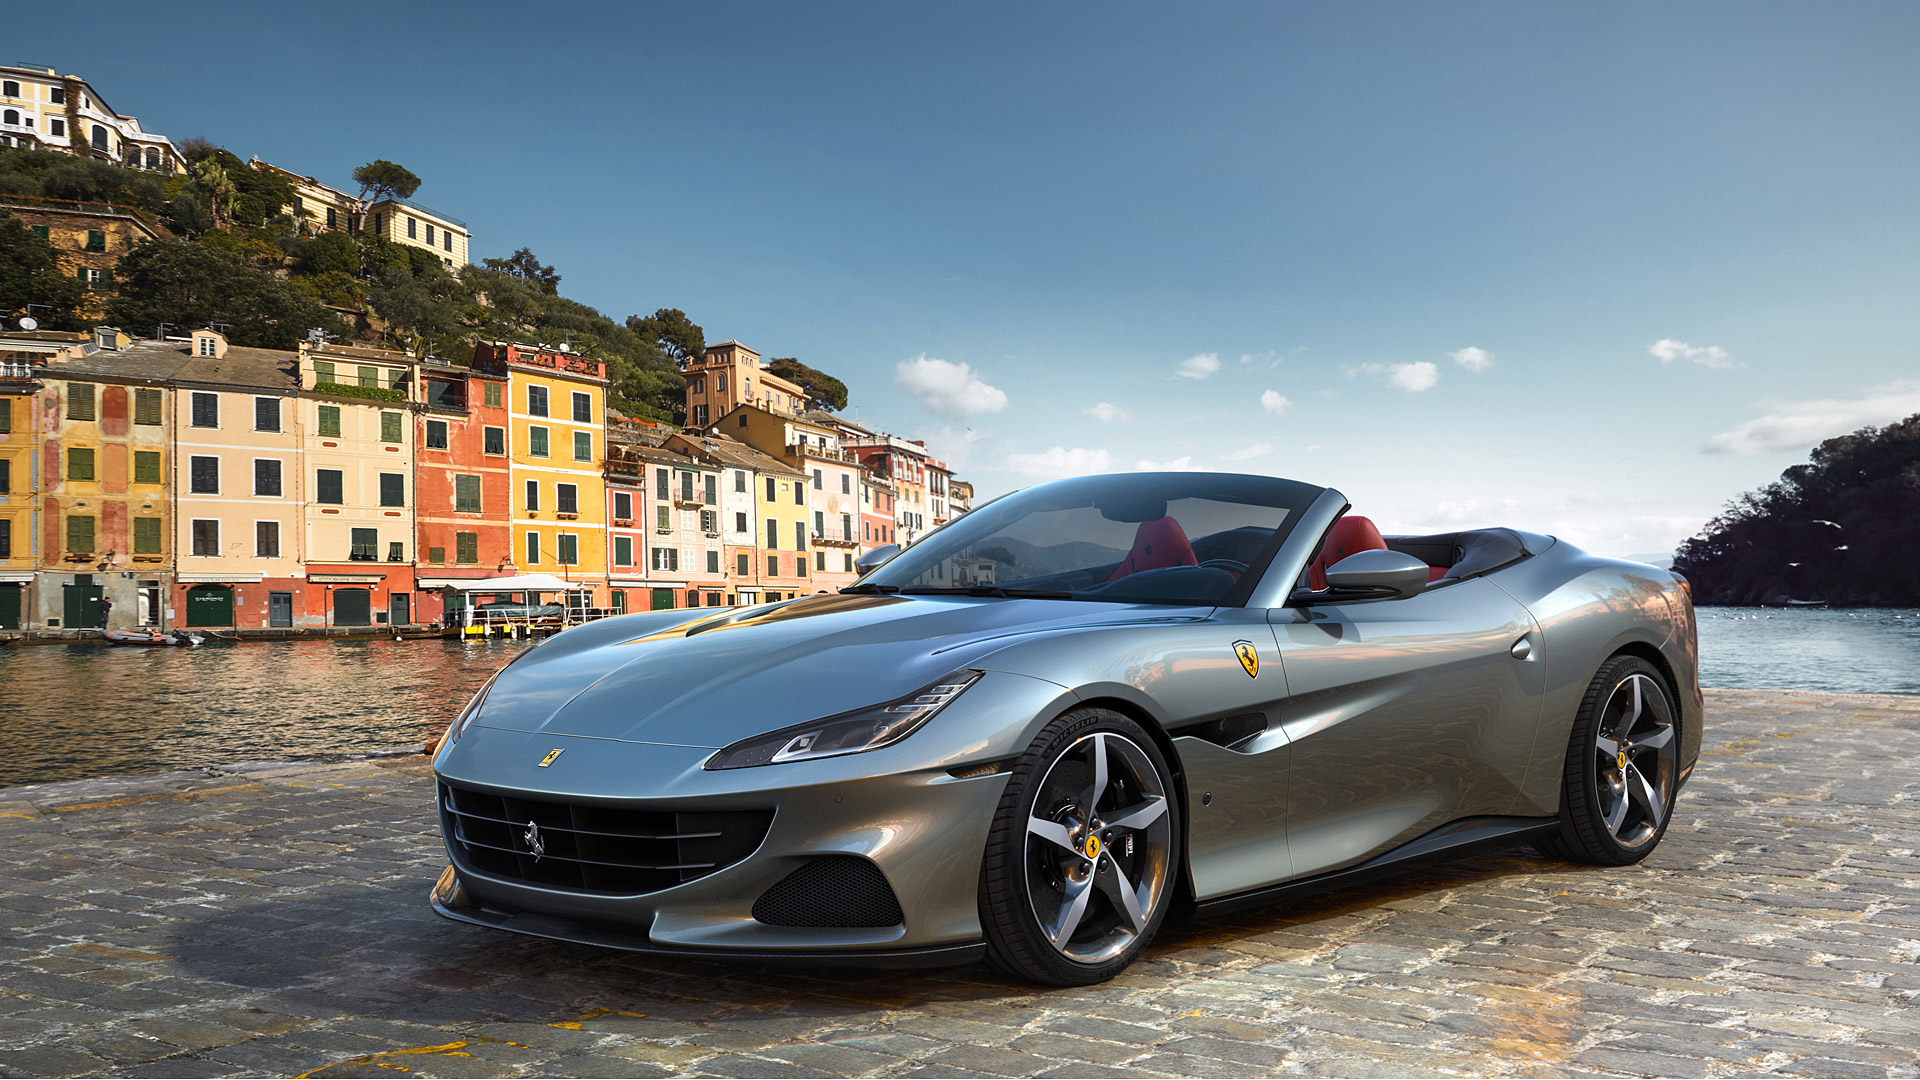 Ferrari Portofino M Modeli Tanıtıldı! İşte Teknik Özellikleri